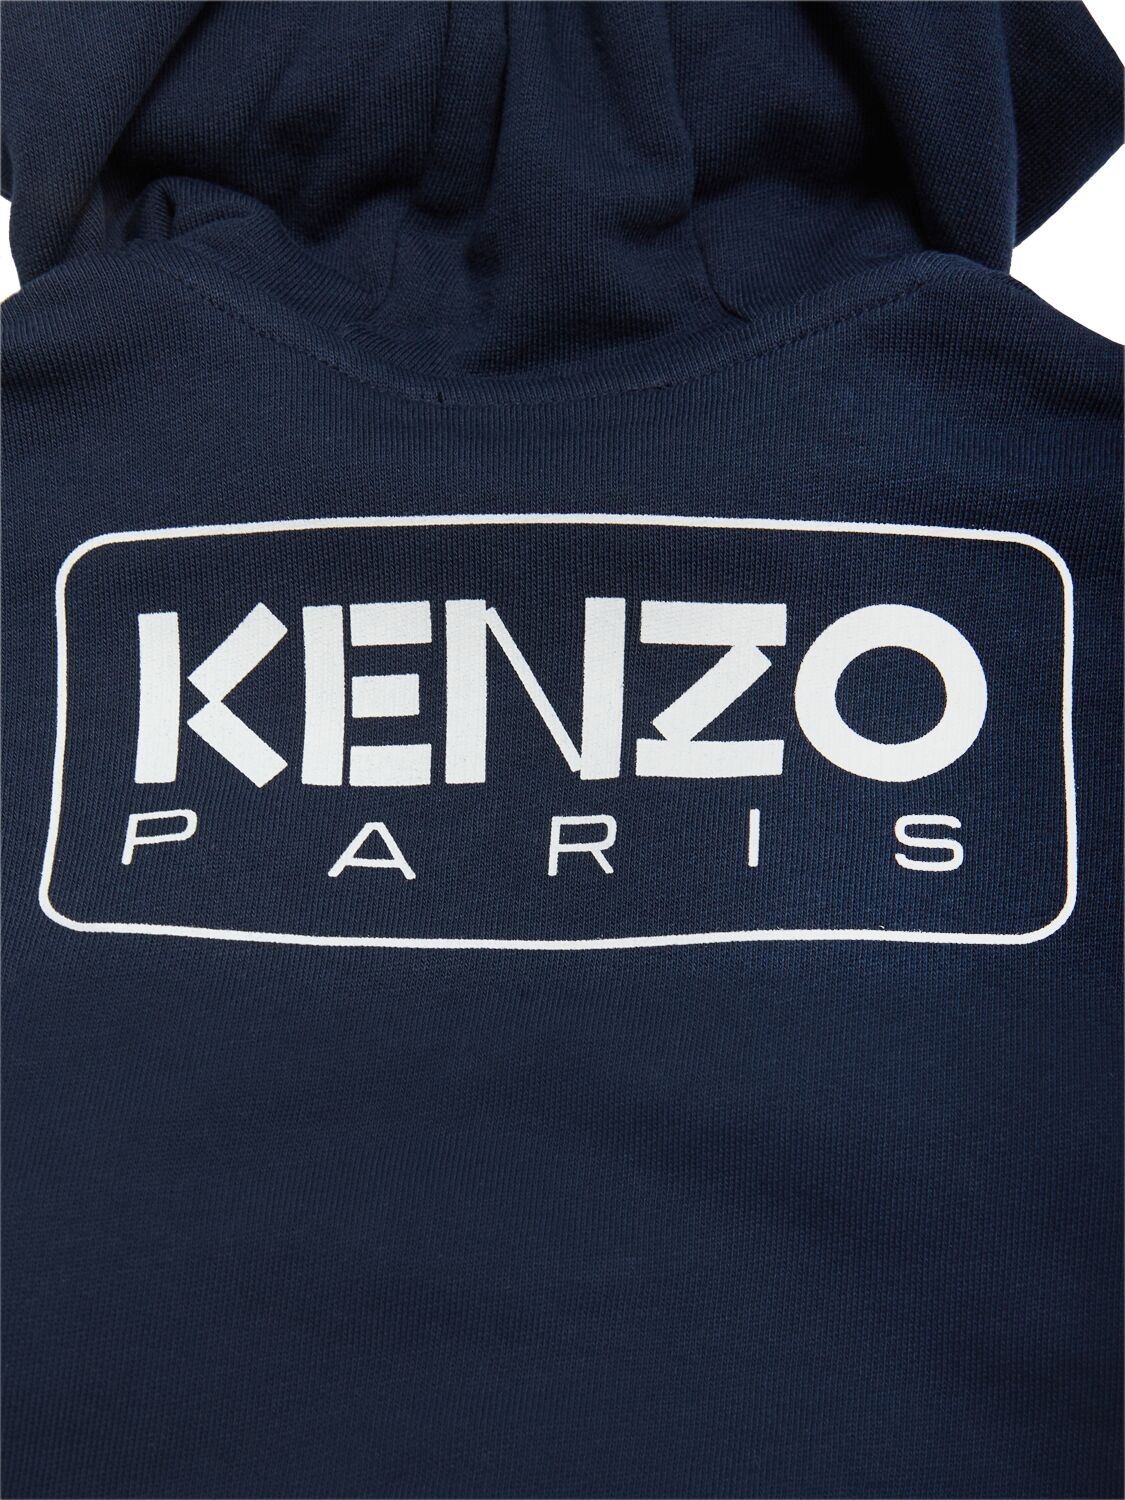 Shop Kenzo Cotton Sweatshirt & Sweatpants In Navy